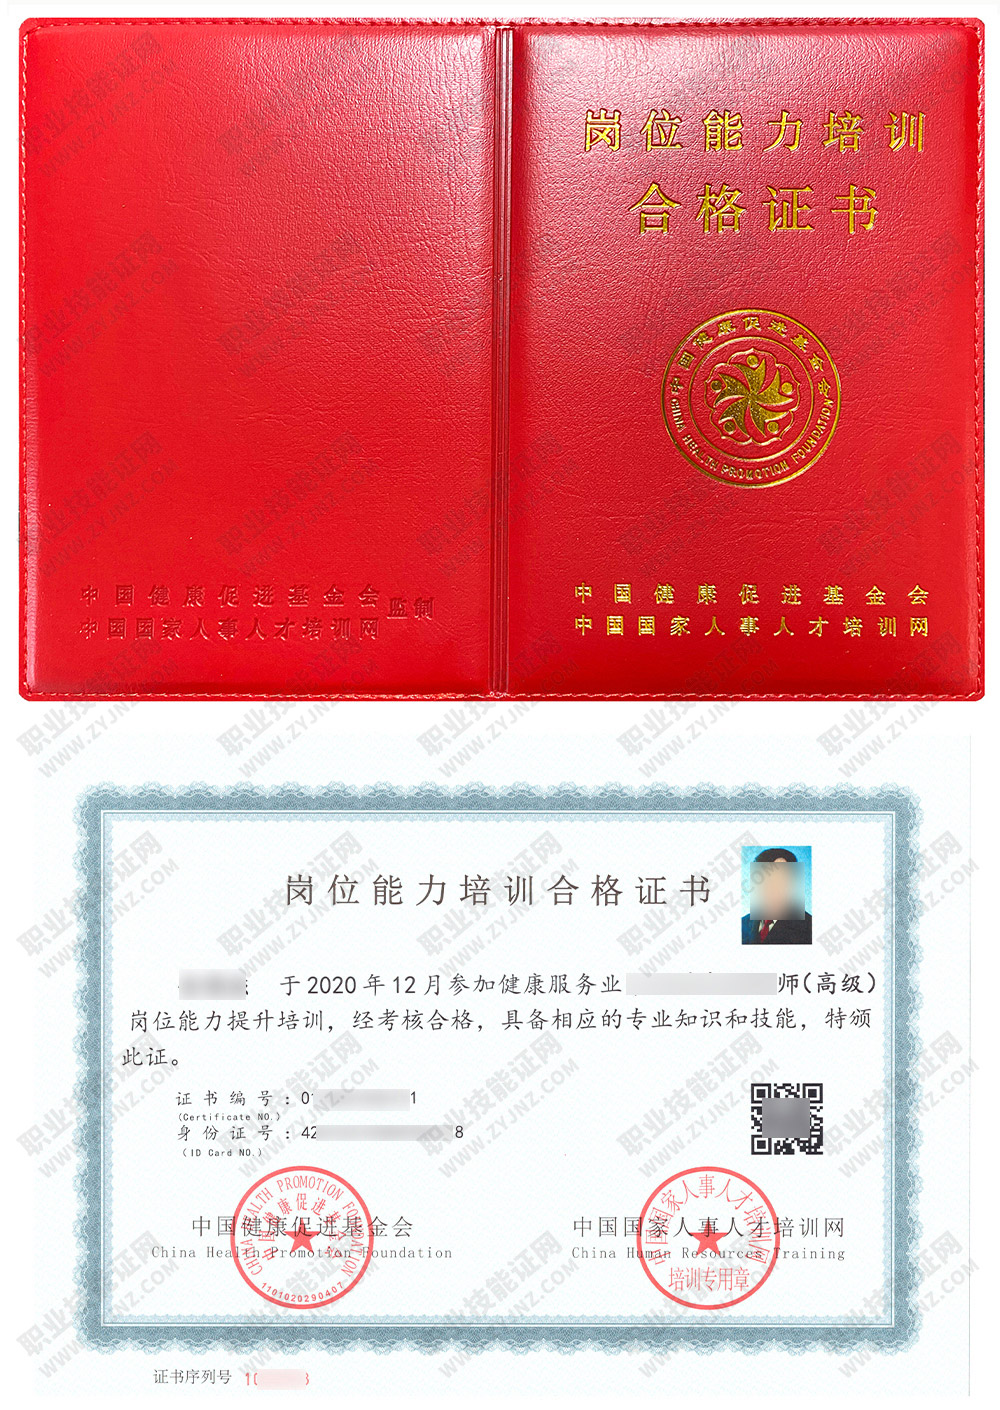 中国国家人事人才培训网 生殖健康咨询师 岗位能力培训合格证书